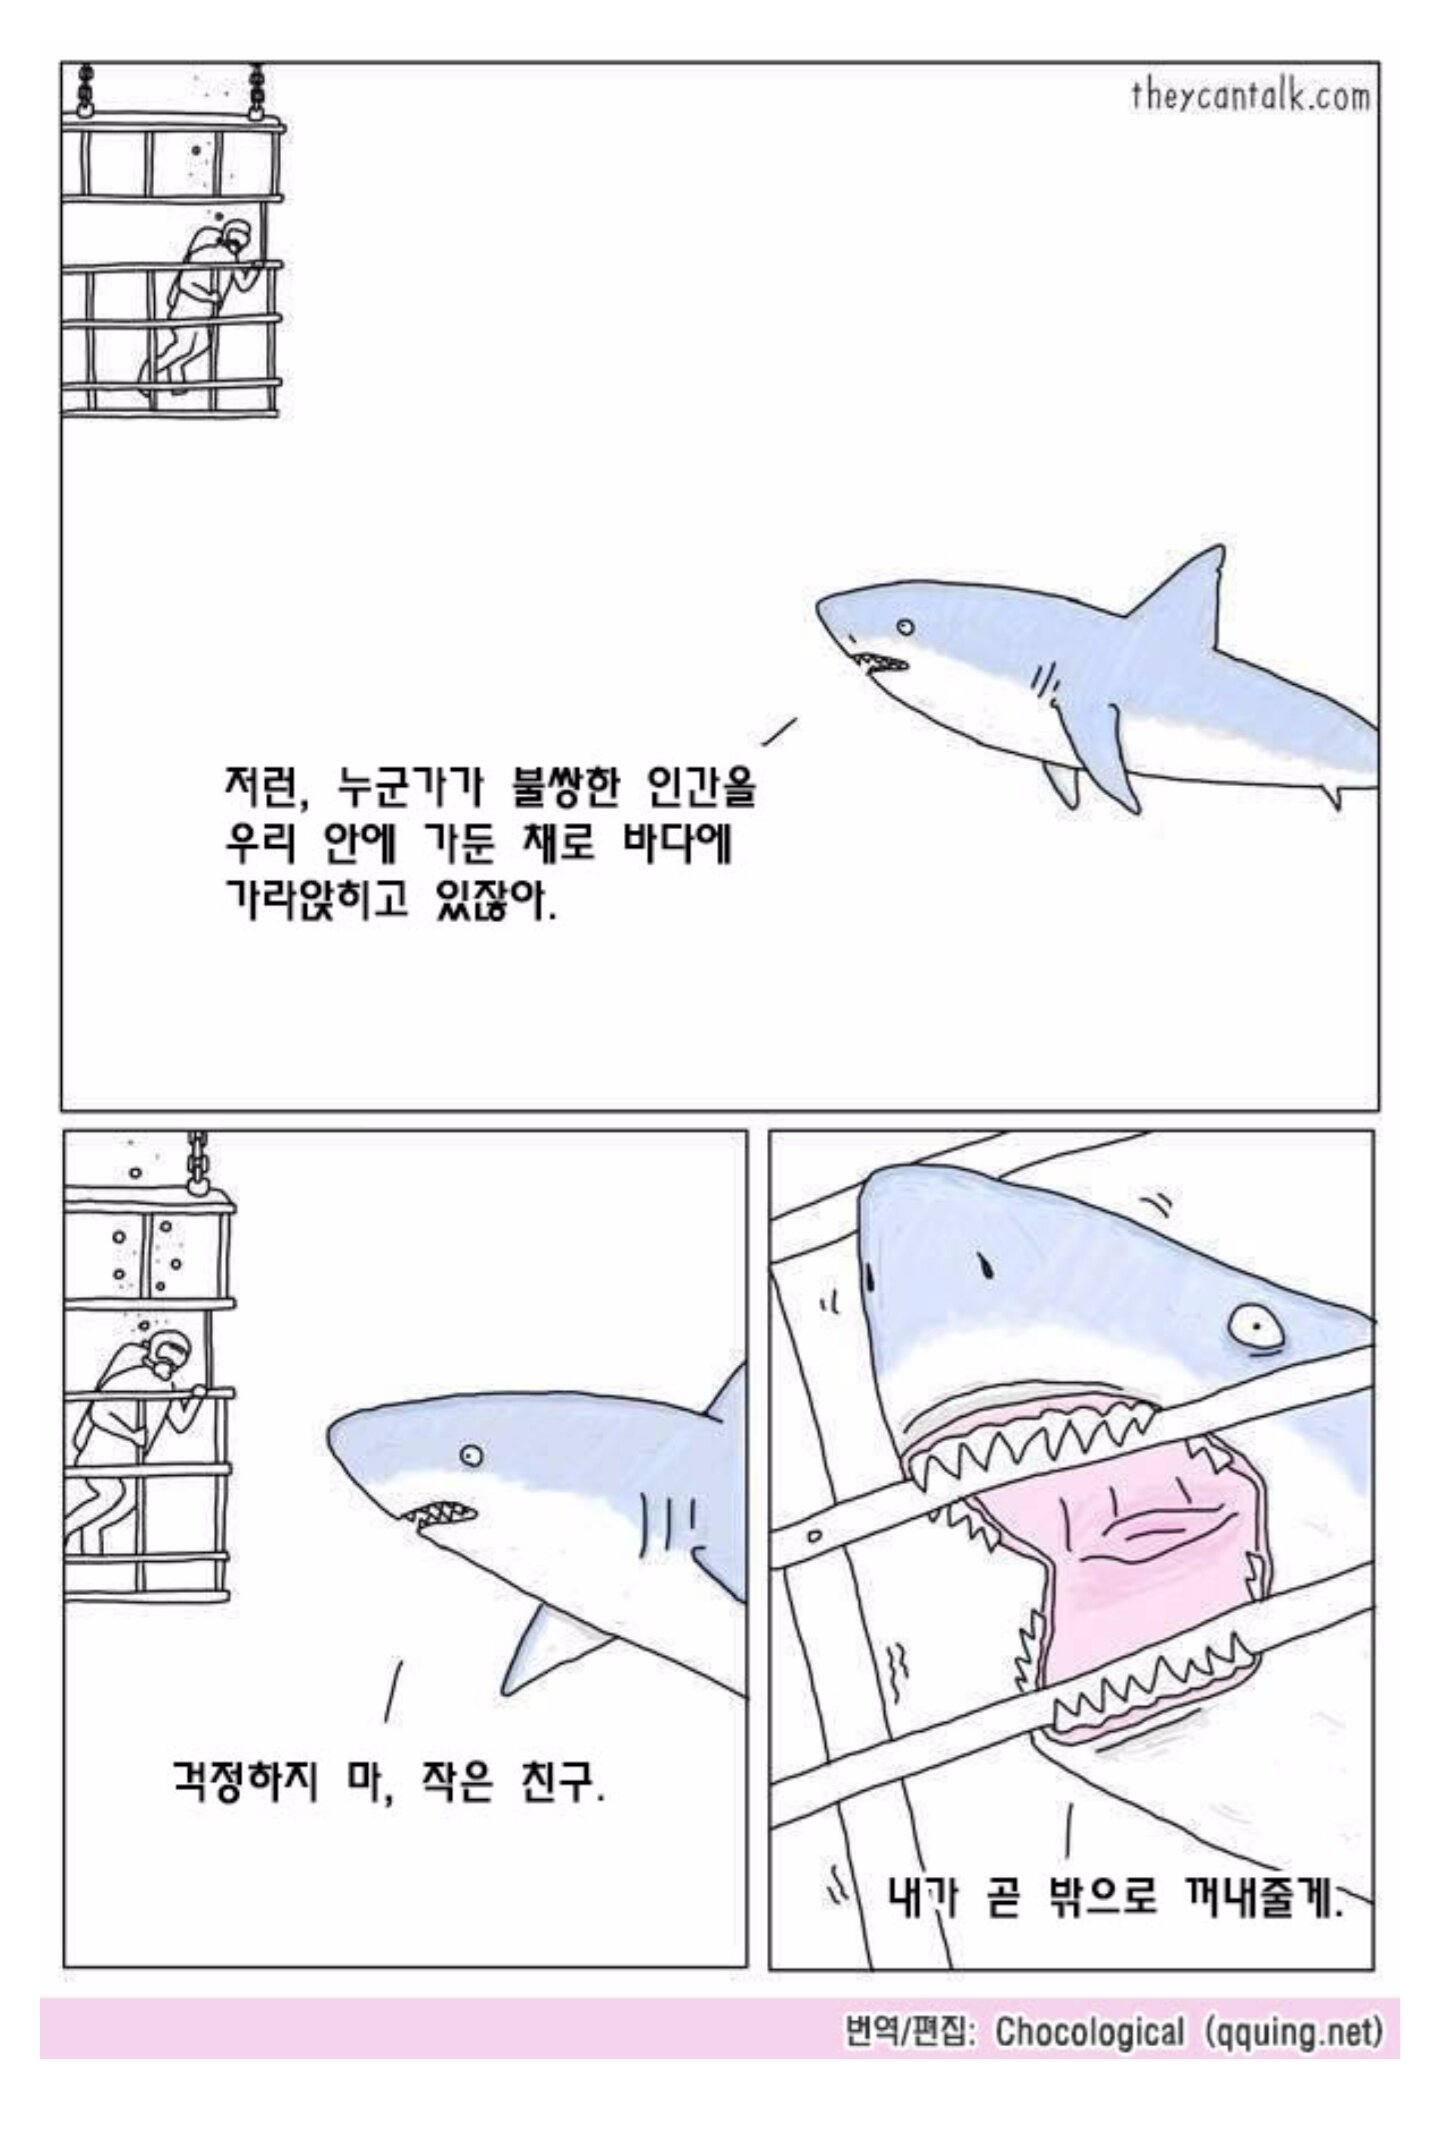 상어에 대한 오해와 진실